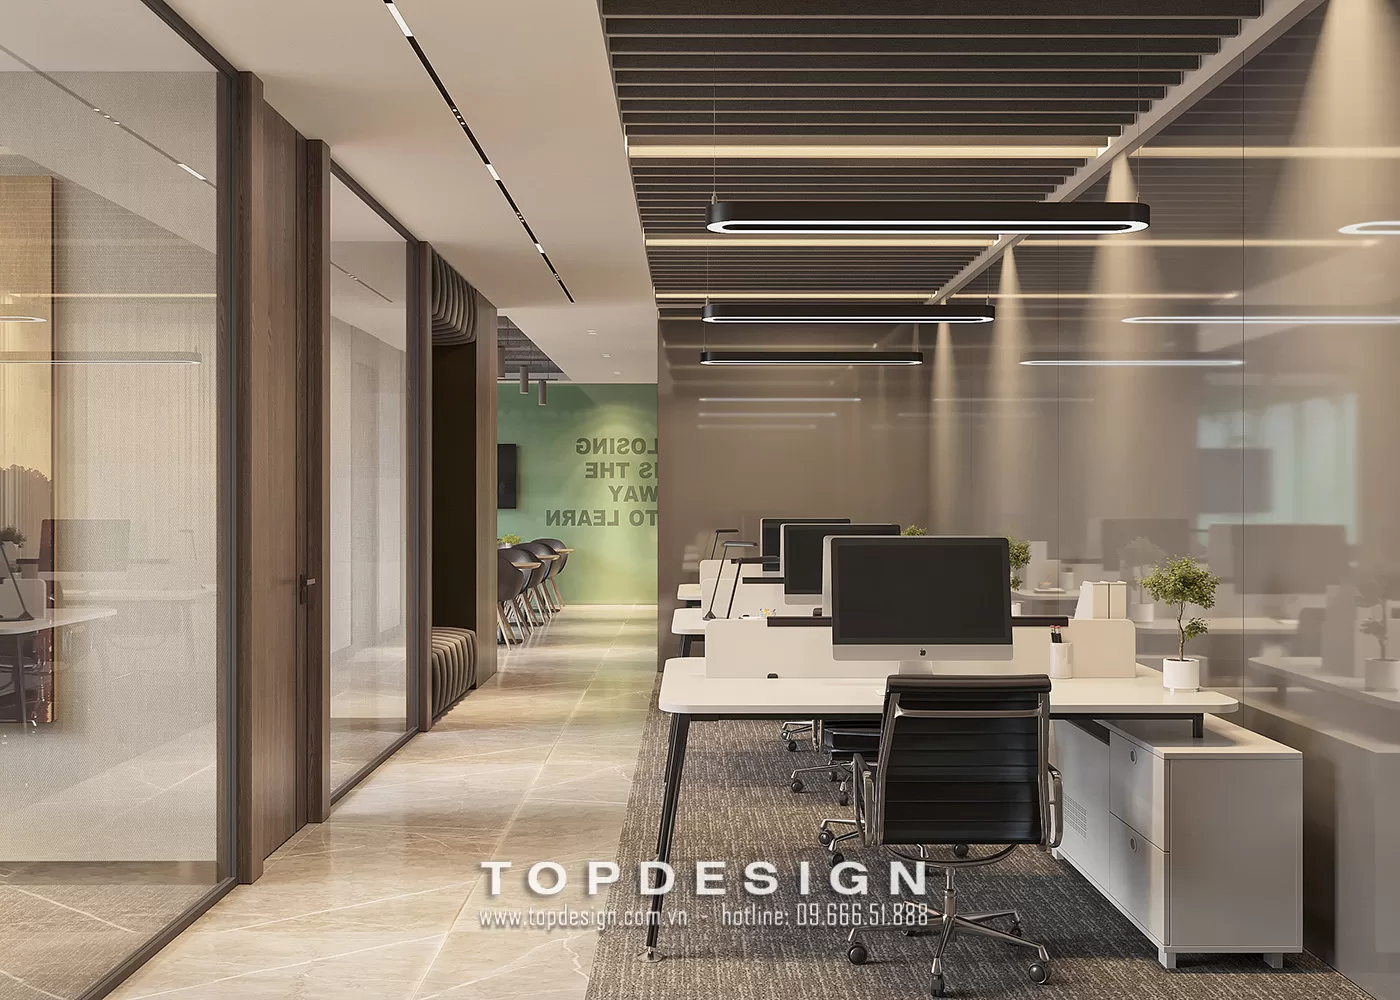 Mẫu thiết kế phòng làm việc hiện đại - TOPDESIGN - 6